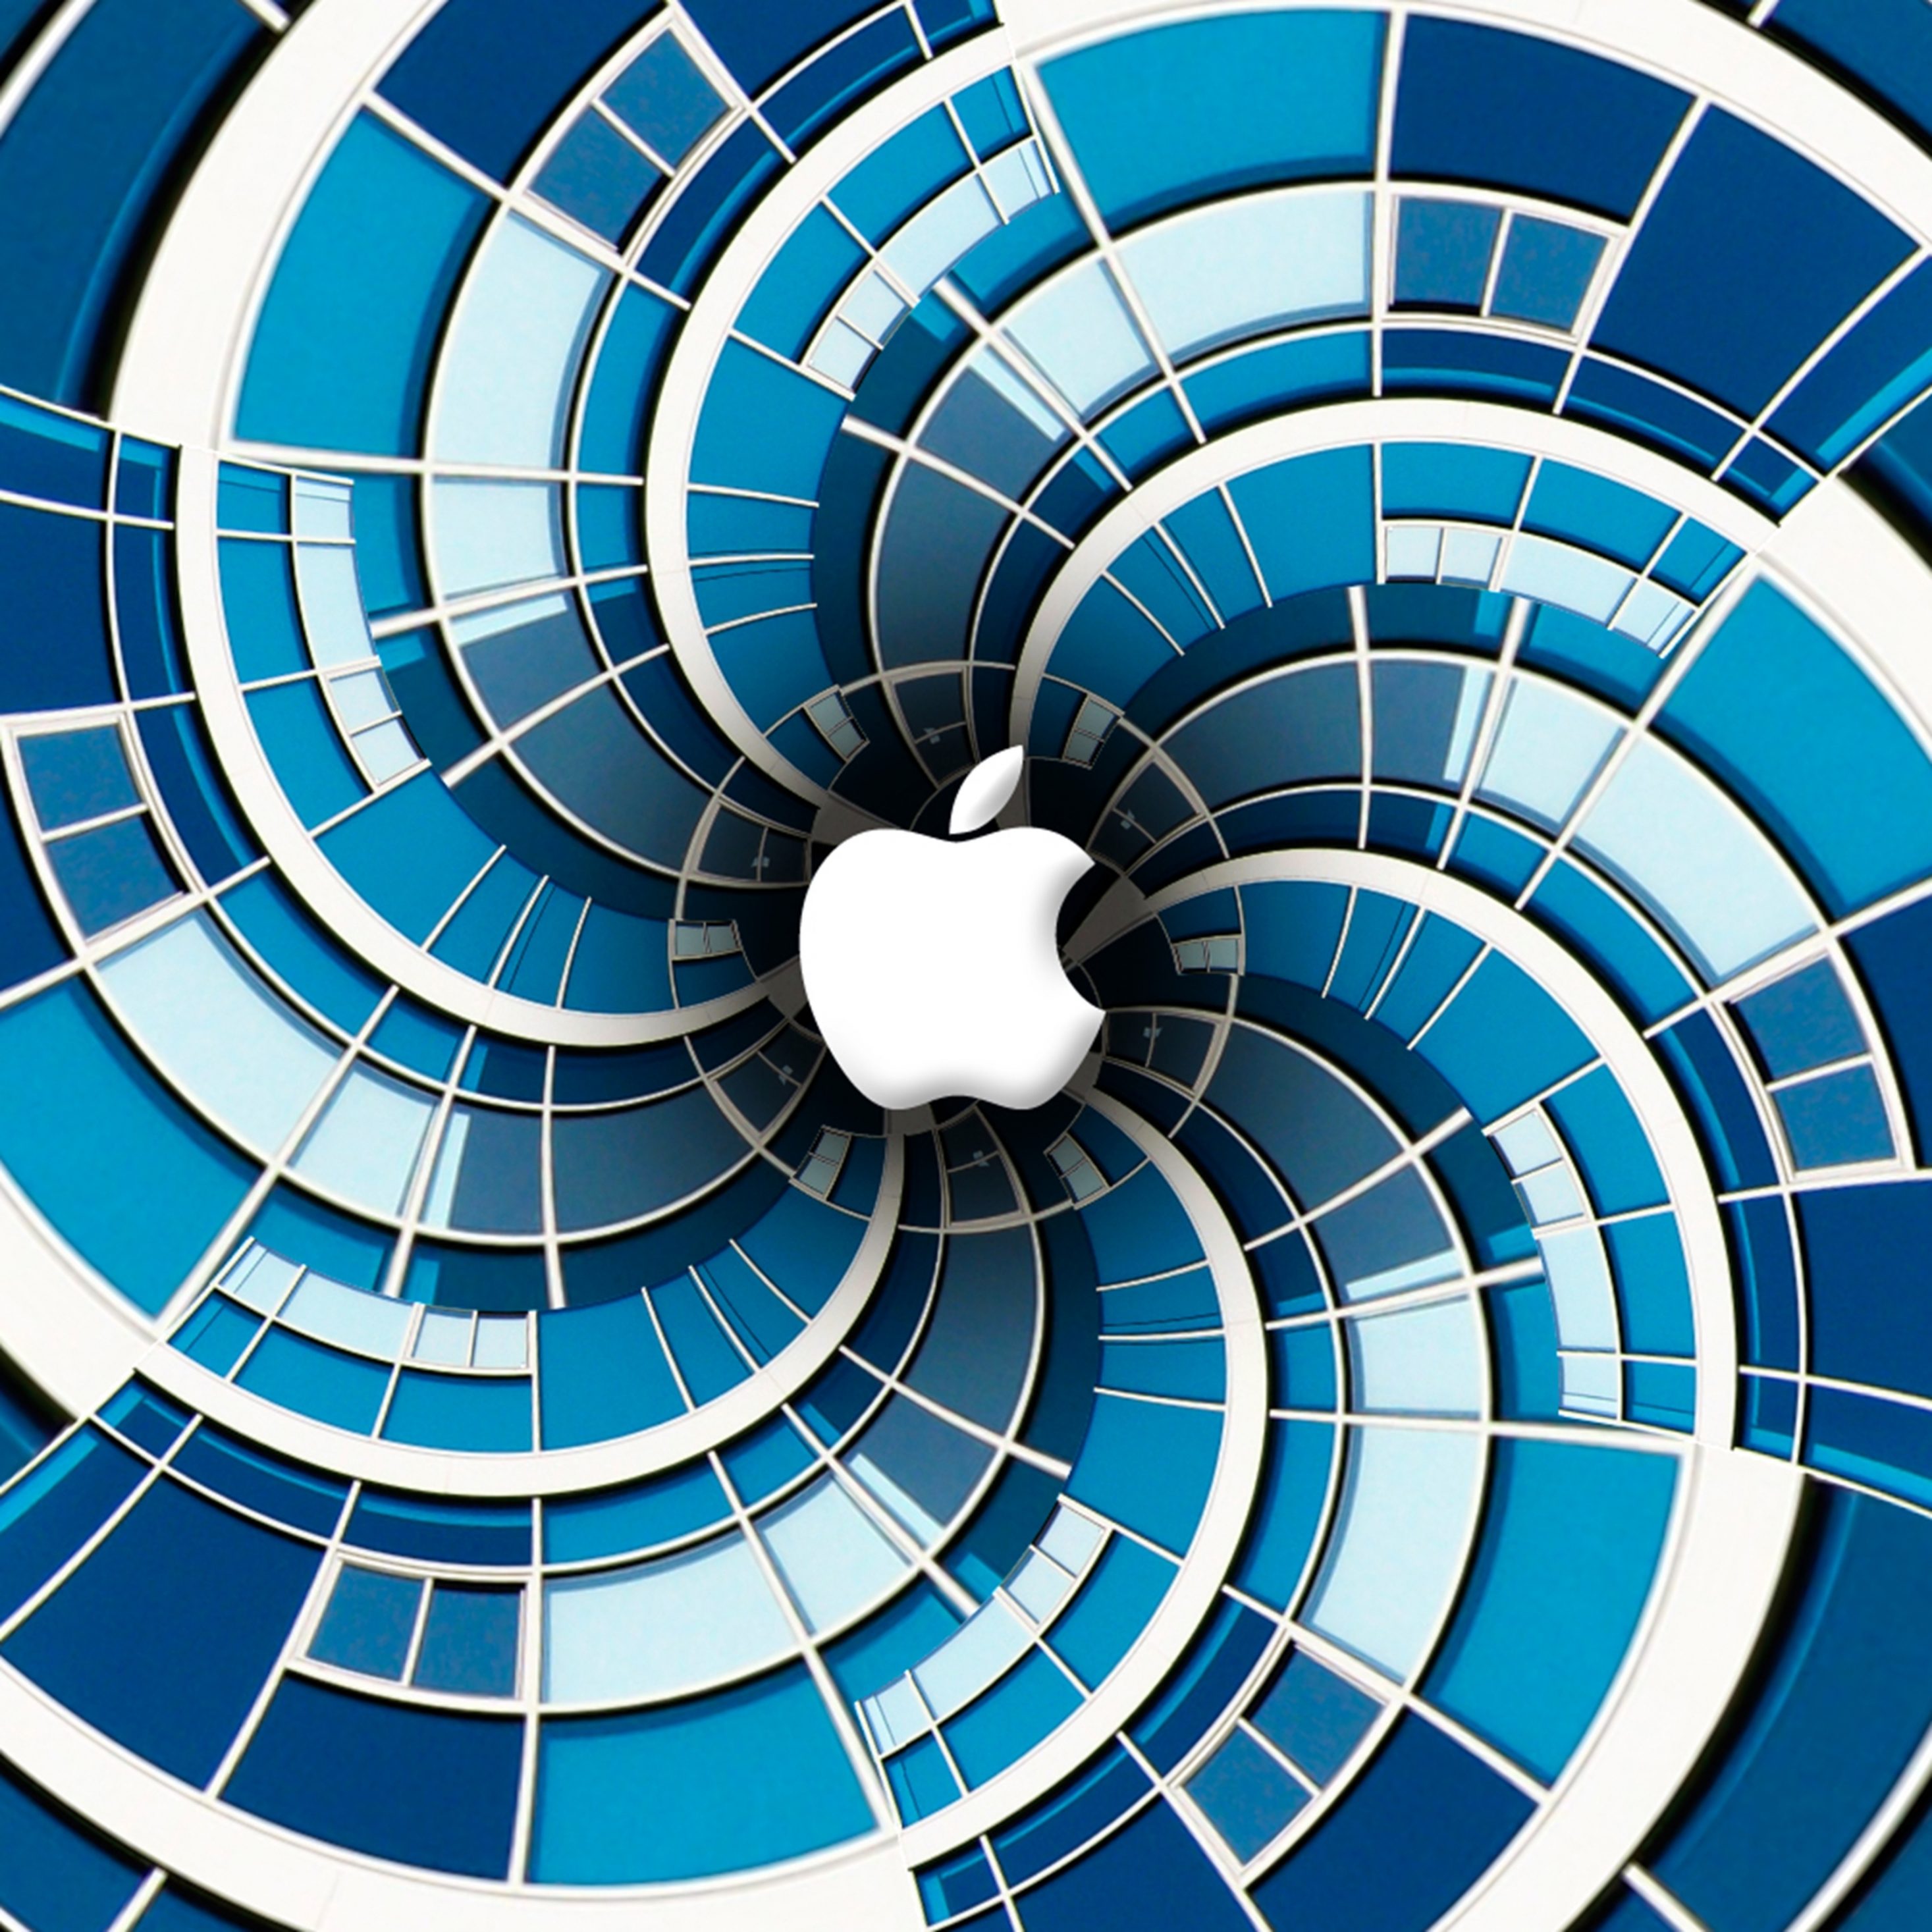 2934x2934 iOS iPad wallpaper 4k Apple Vertigo Ipad Wallpaper 2934x2934 pixels resolution